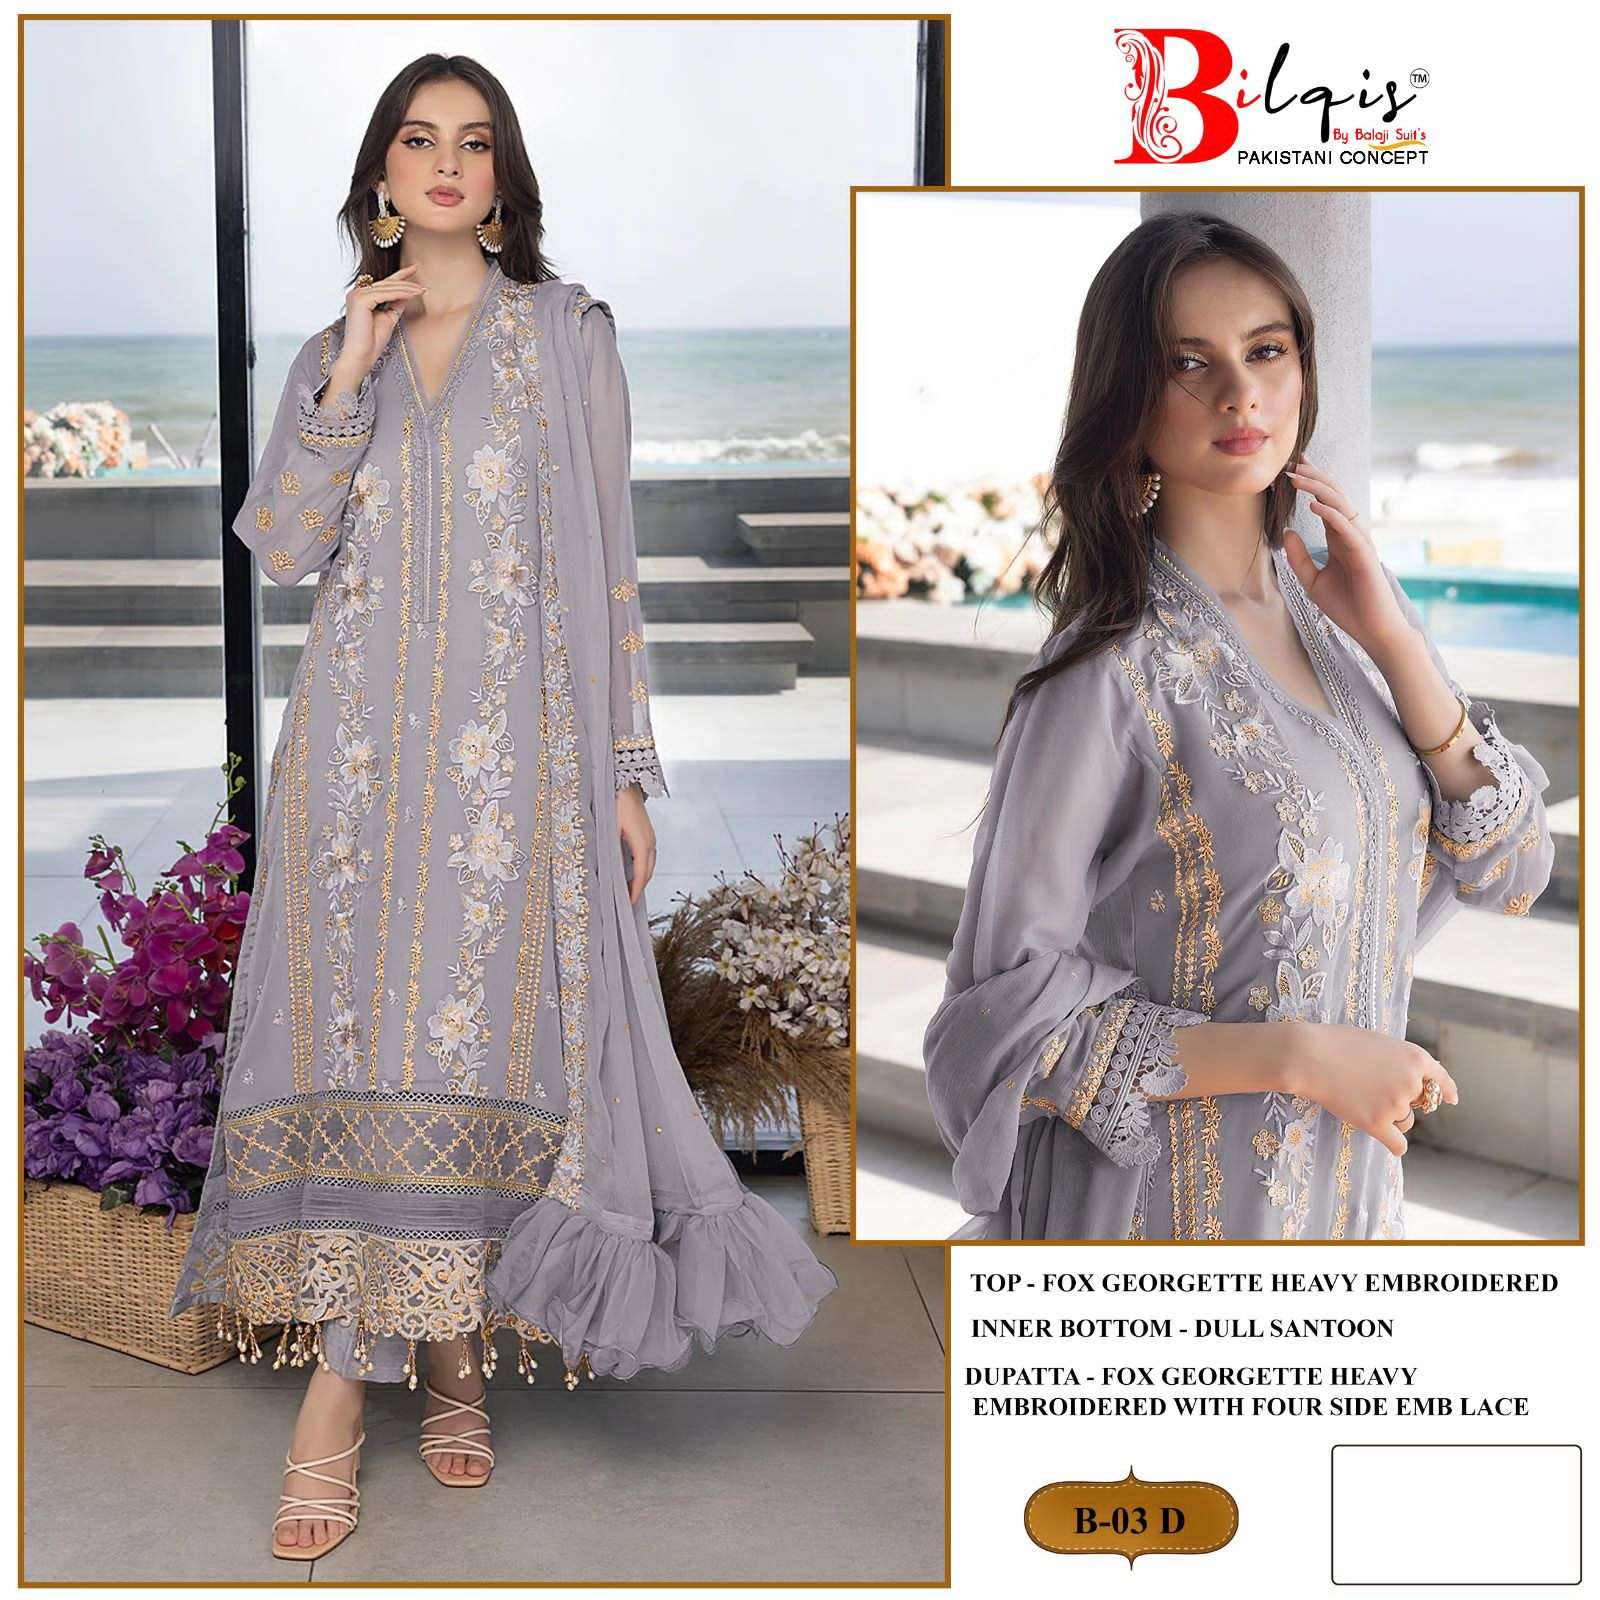 Bilqis Tm B 01 To 04 Pakistani Suits Wholesale catalog